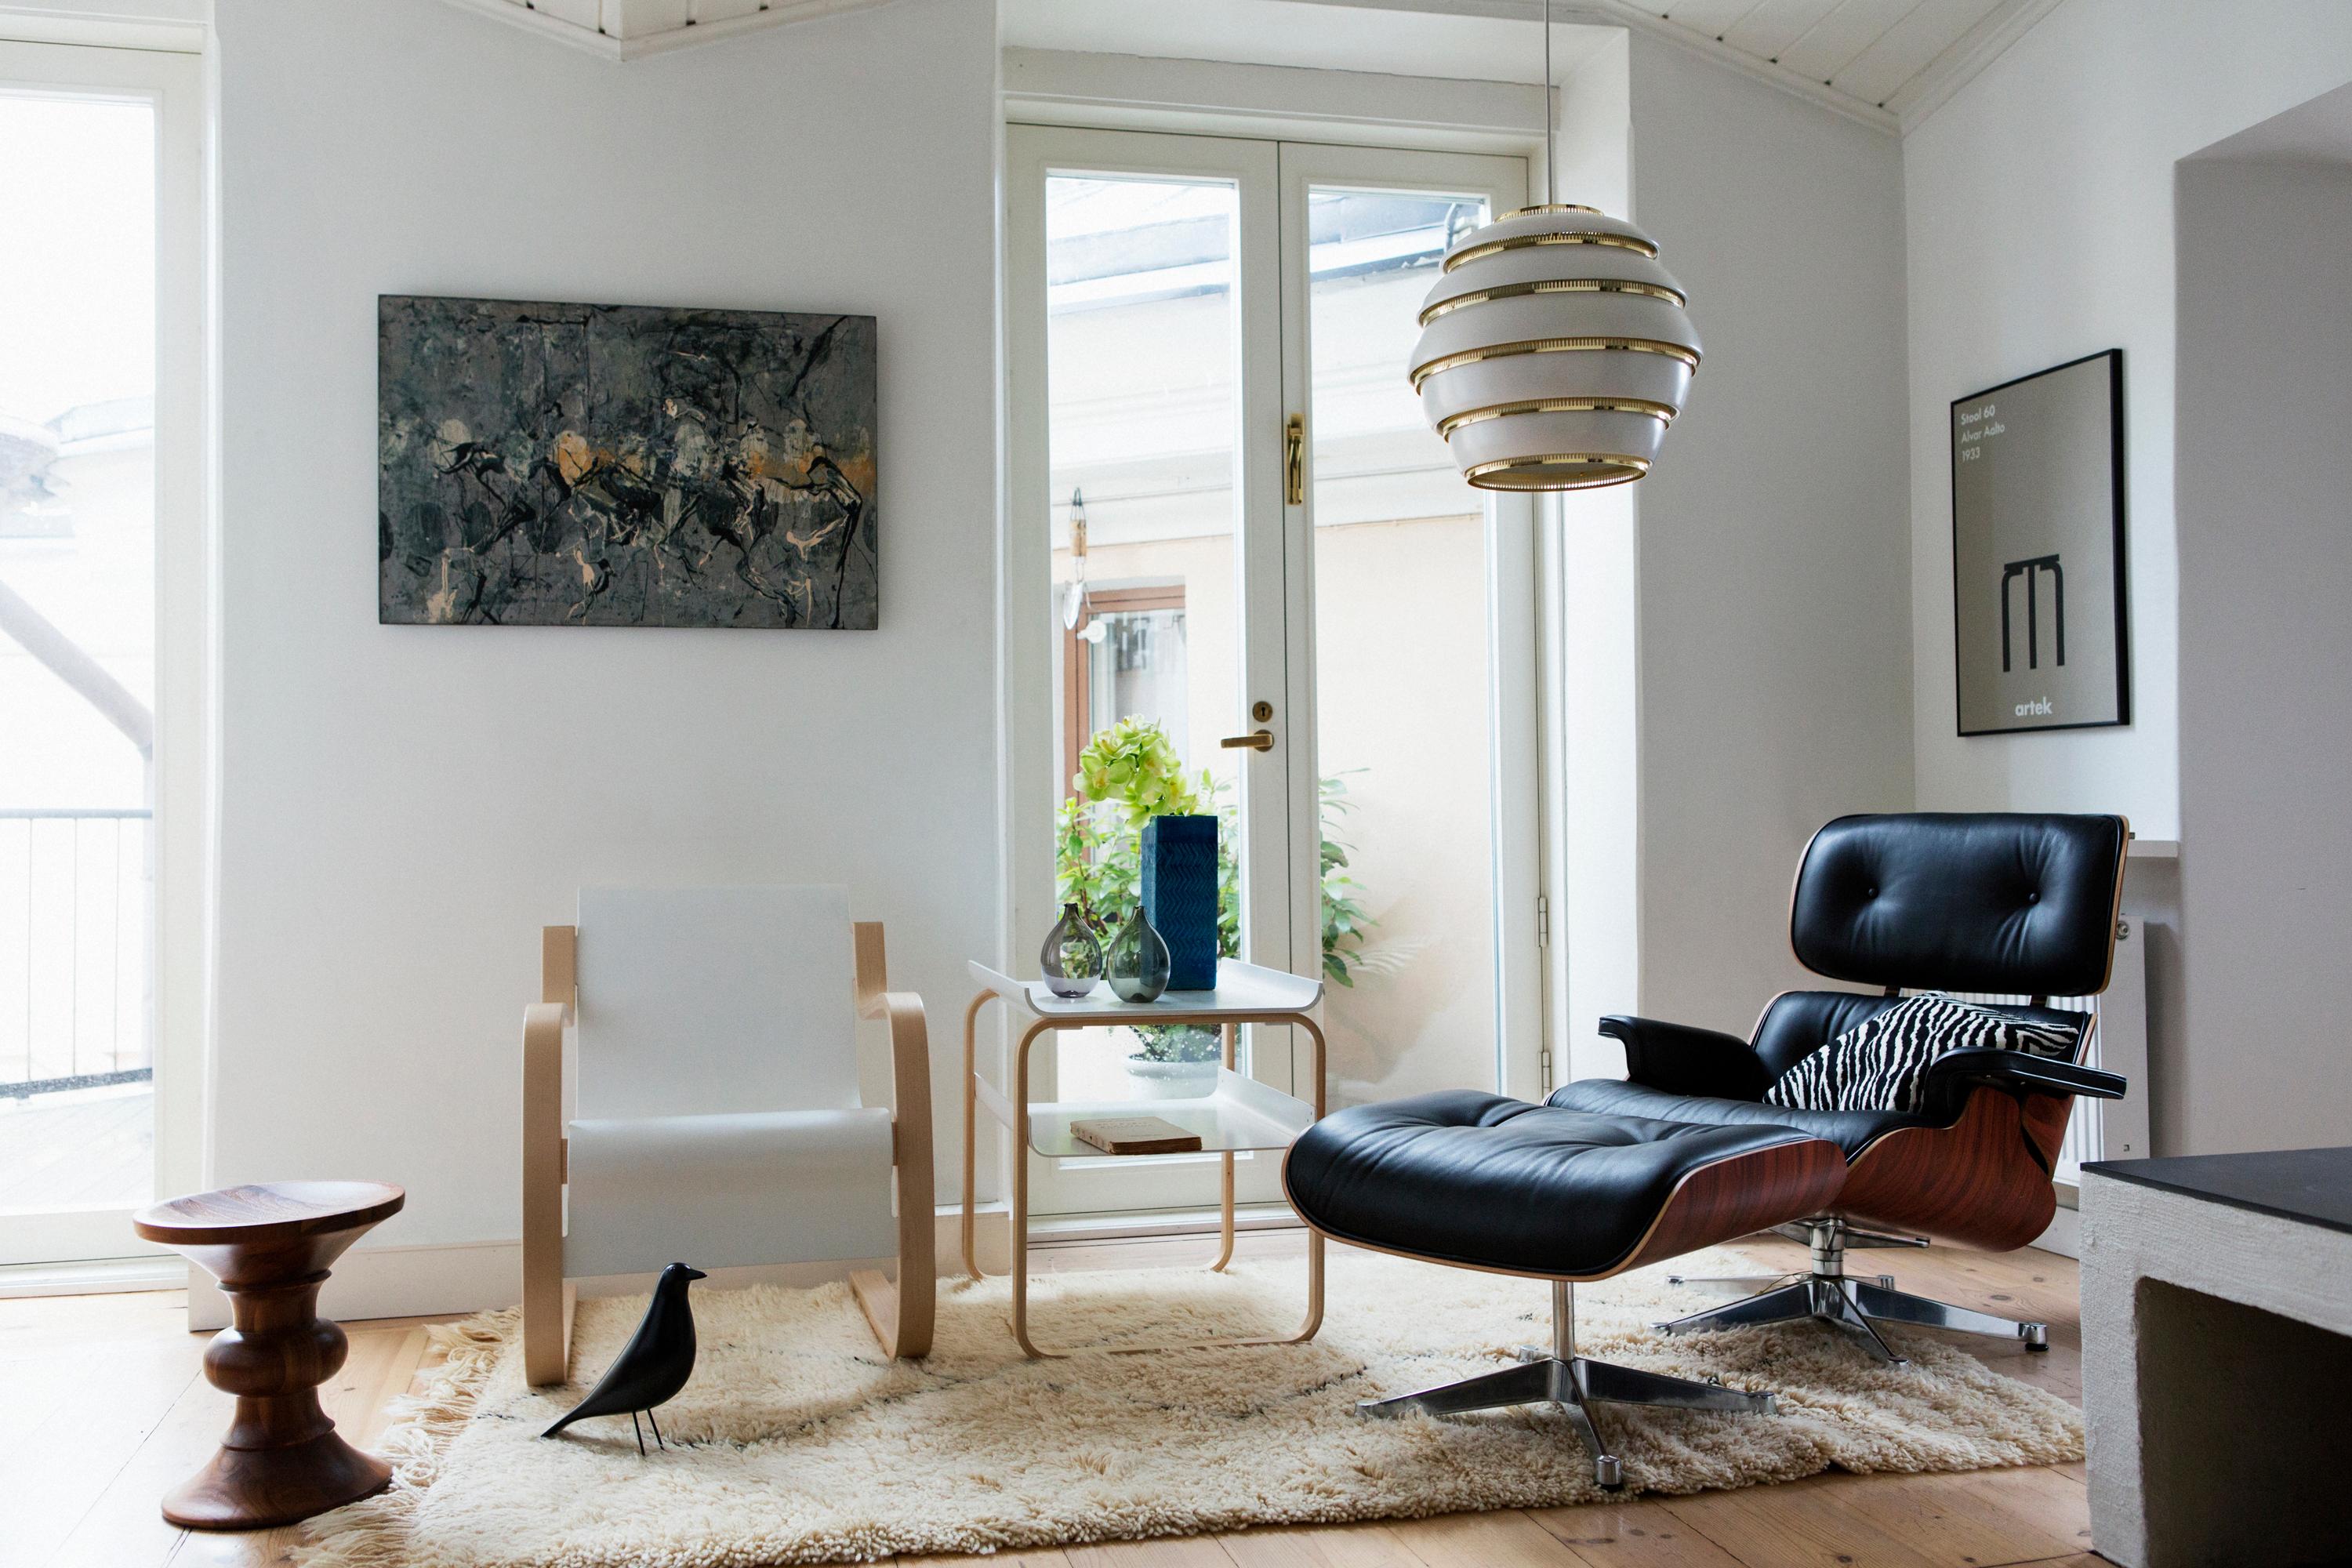 Schwarzer Lounge-Sessel #beistelltisch #hängeleuchte ©Artek